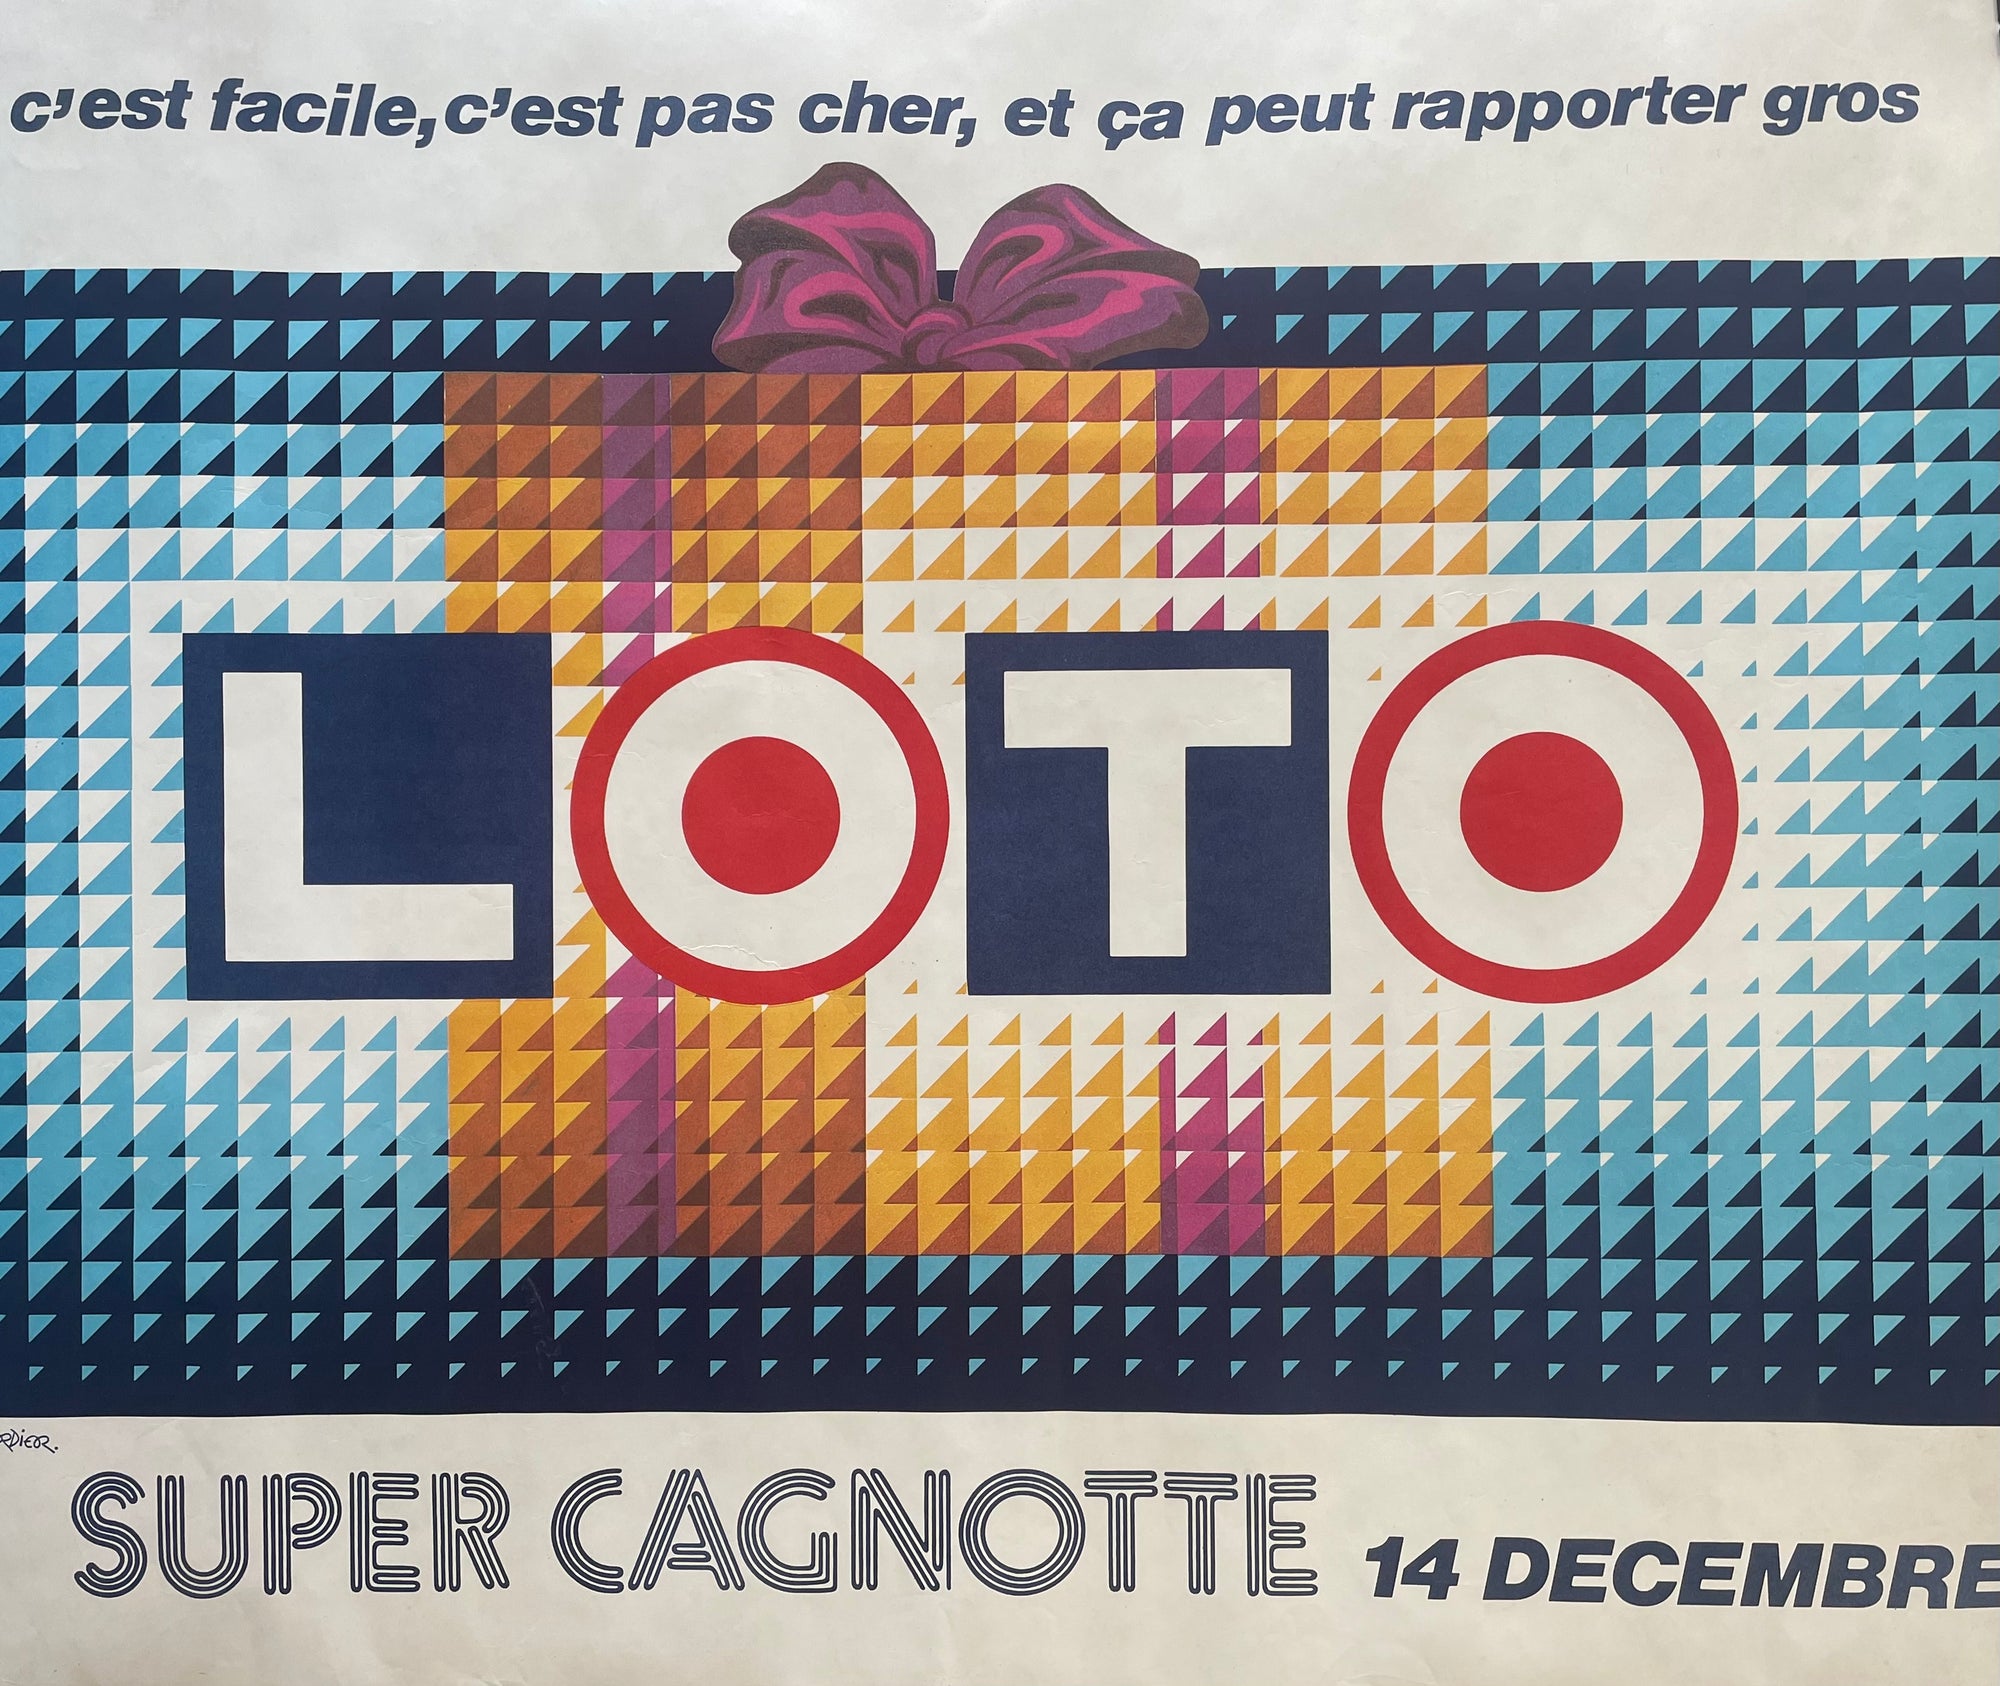 Loto Super Cagnotte by D. Verdieor